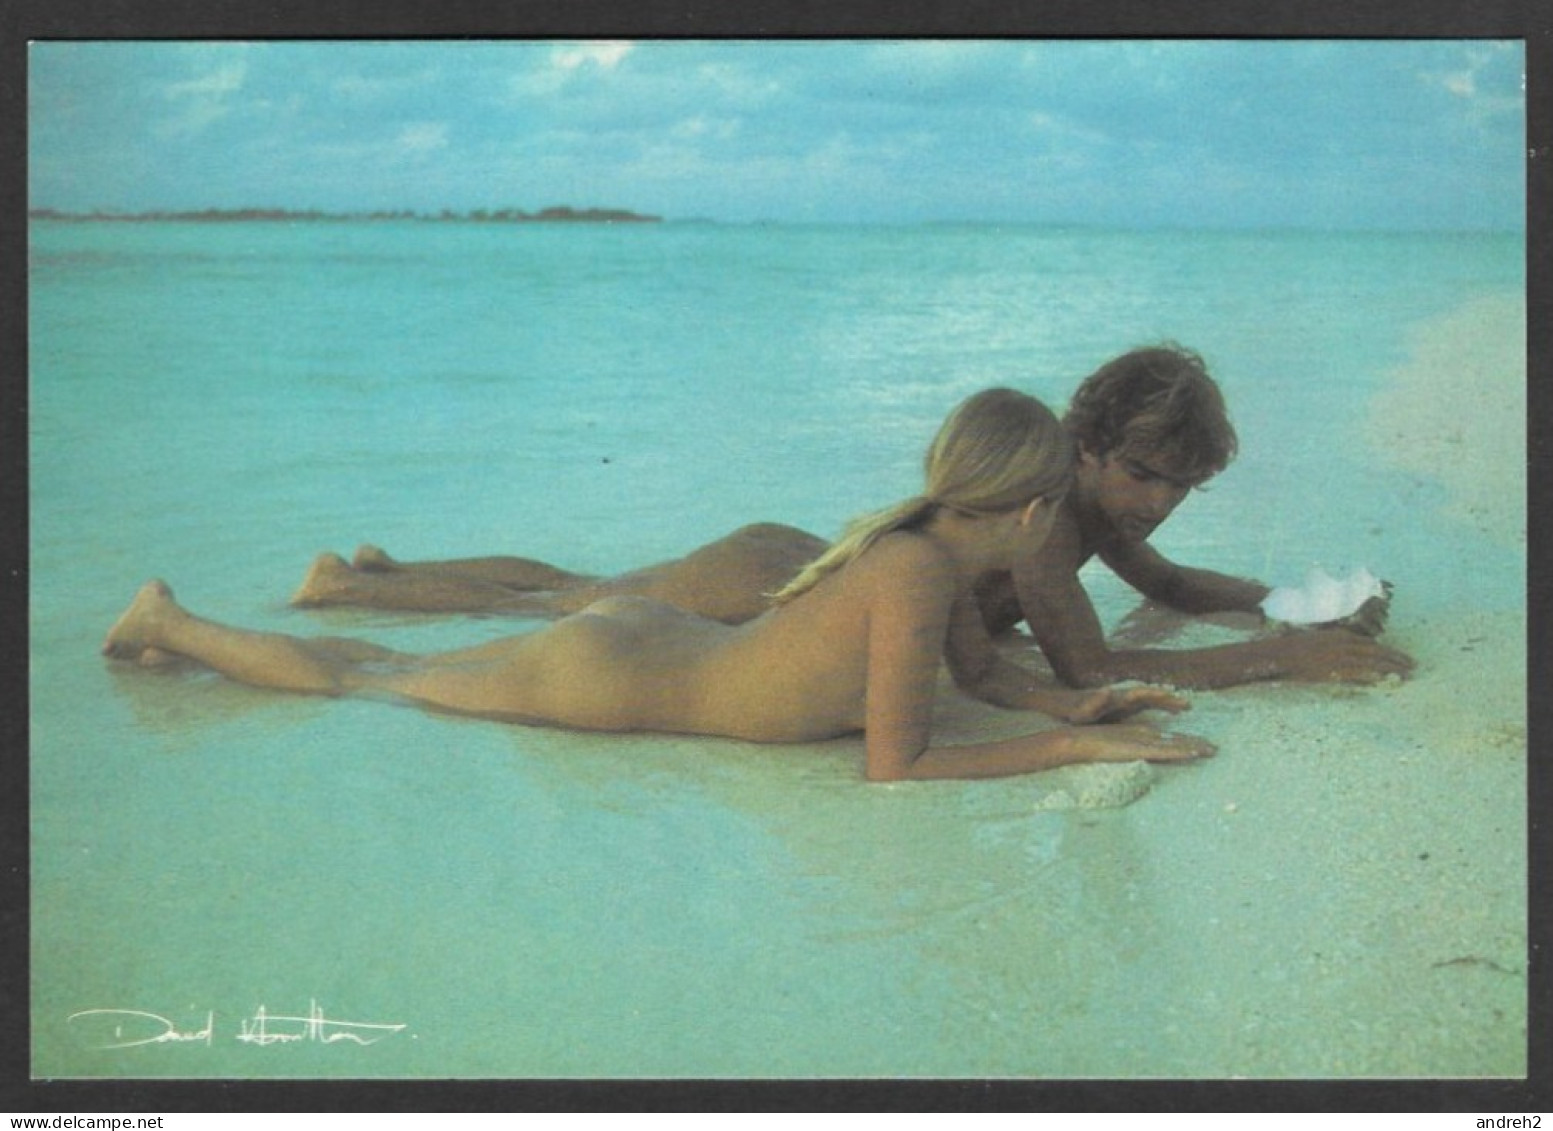 ILLUSTRATEUR SIGNÉ DAVID HAMILTON COUPLES 17x12cm  NUS SUR LA PLAGE - NUDE ON THE BEACH - SEXY - PHOTO BY DAVID HAMILTON - Hamilton